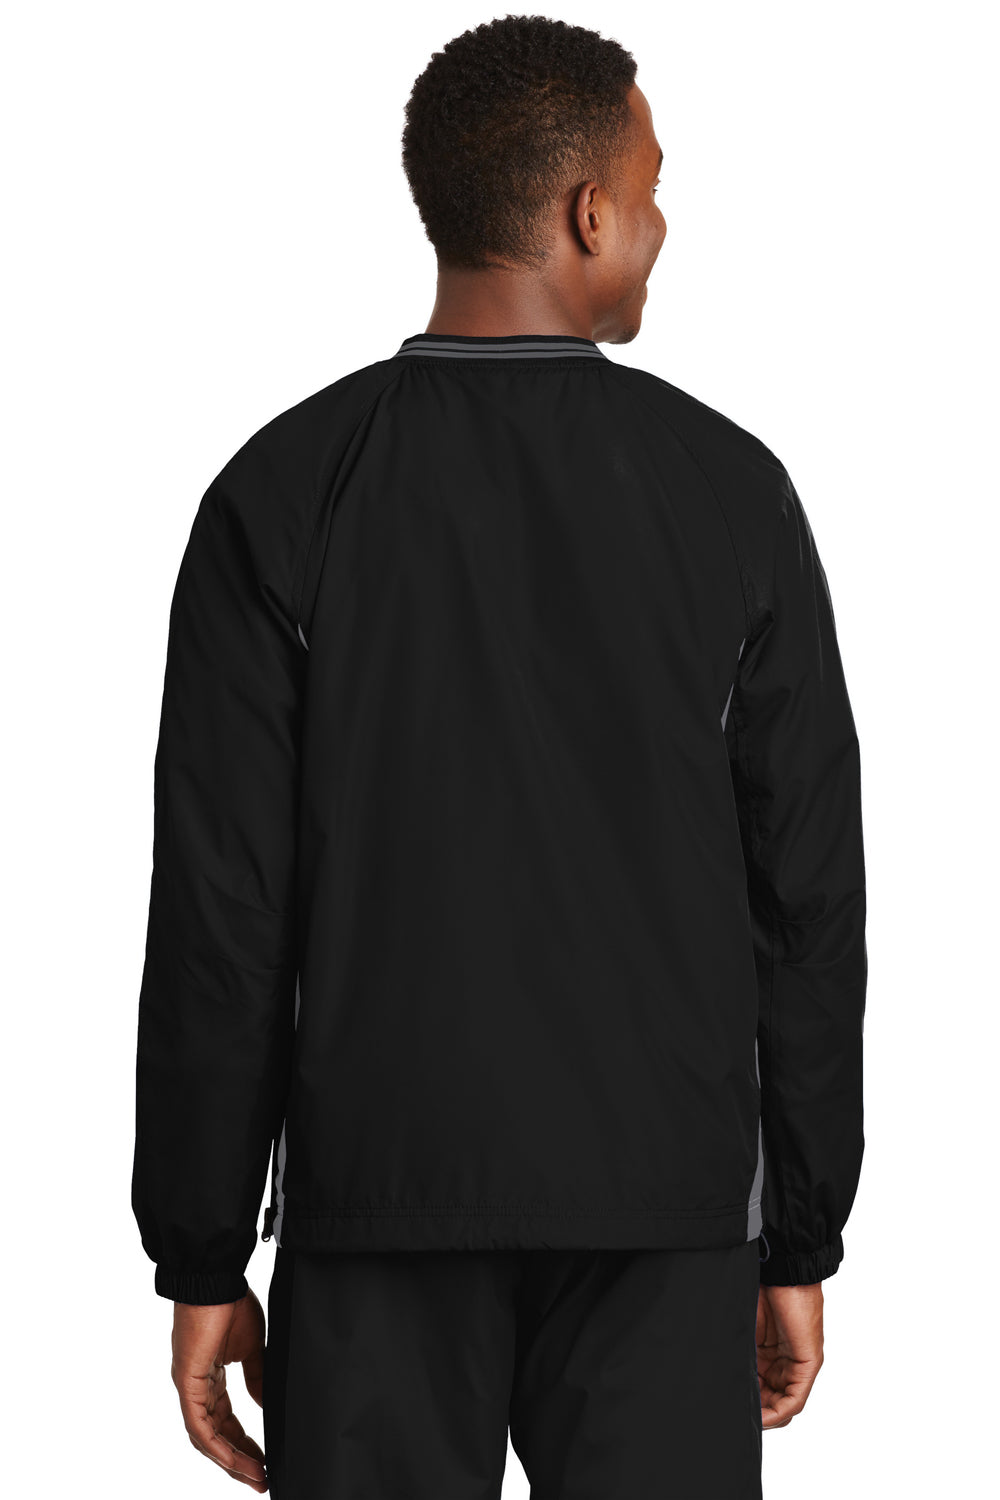 Sport-Tek JST62 Mens Wind & Water Resistant V-Neck Jacket Black/Grey Back